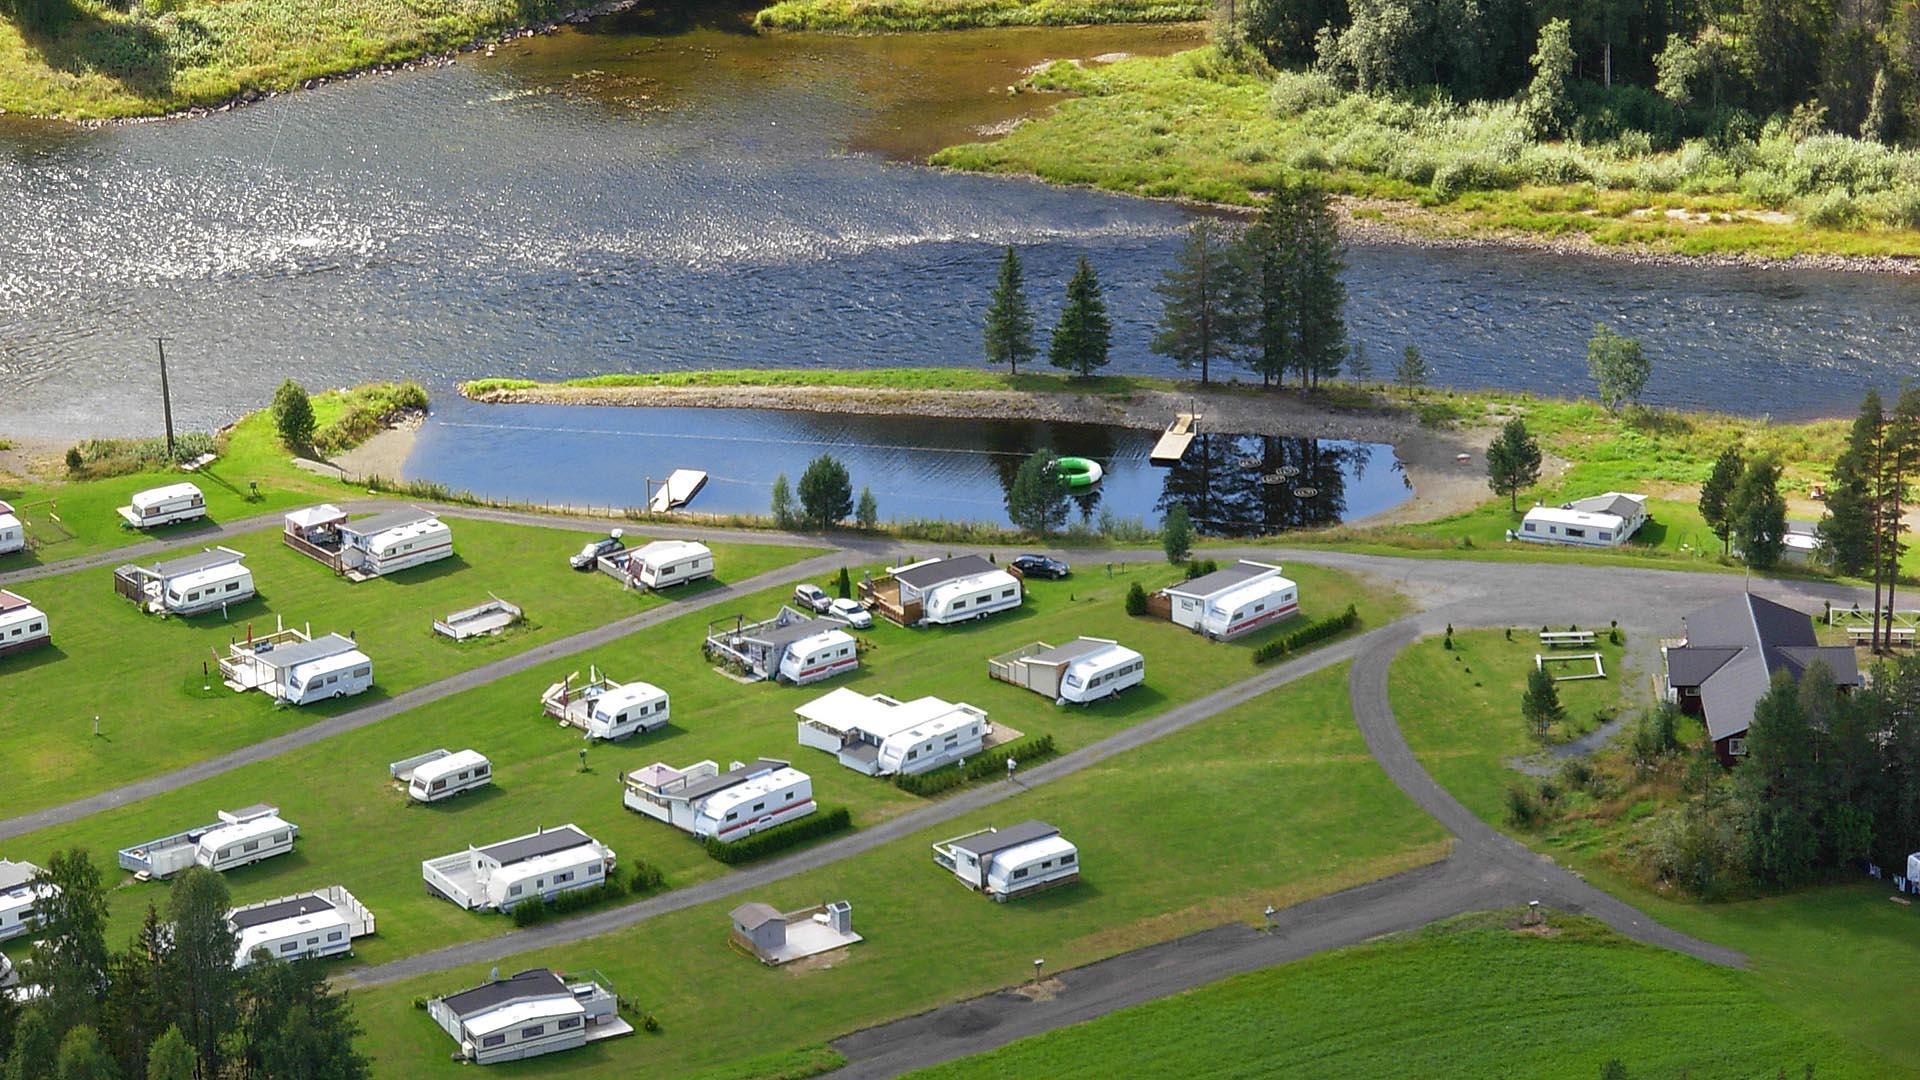 Luftfoto av campingplass med faste vogner på grønn plen ved elvebredd og casting anlegg